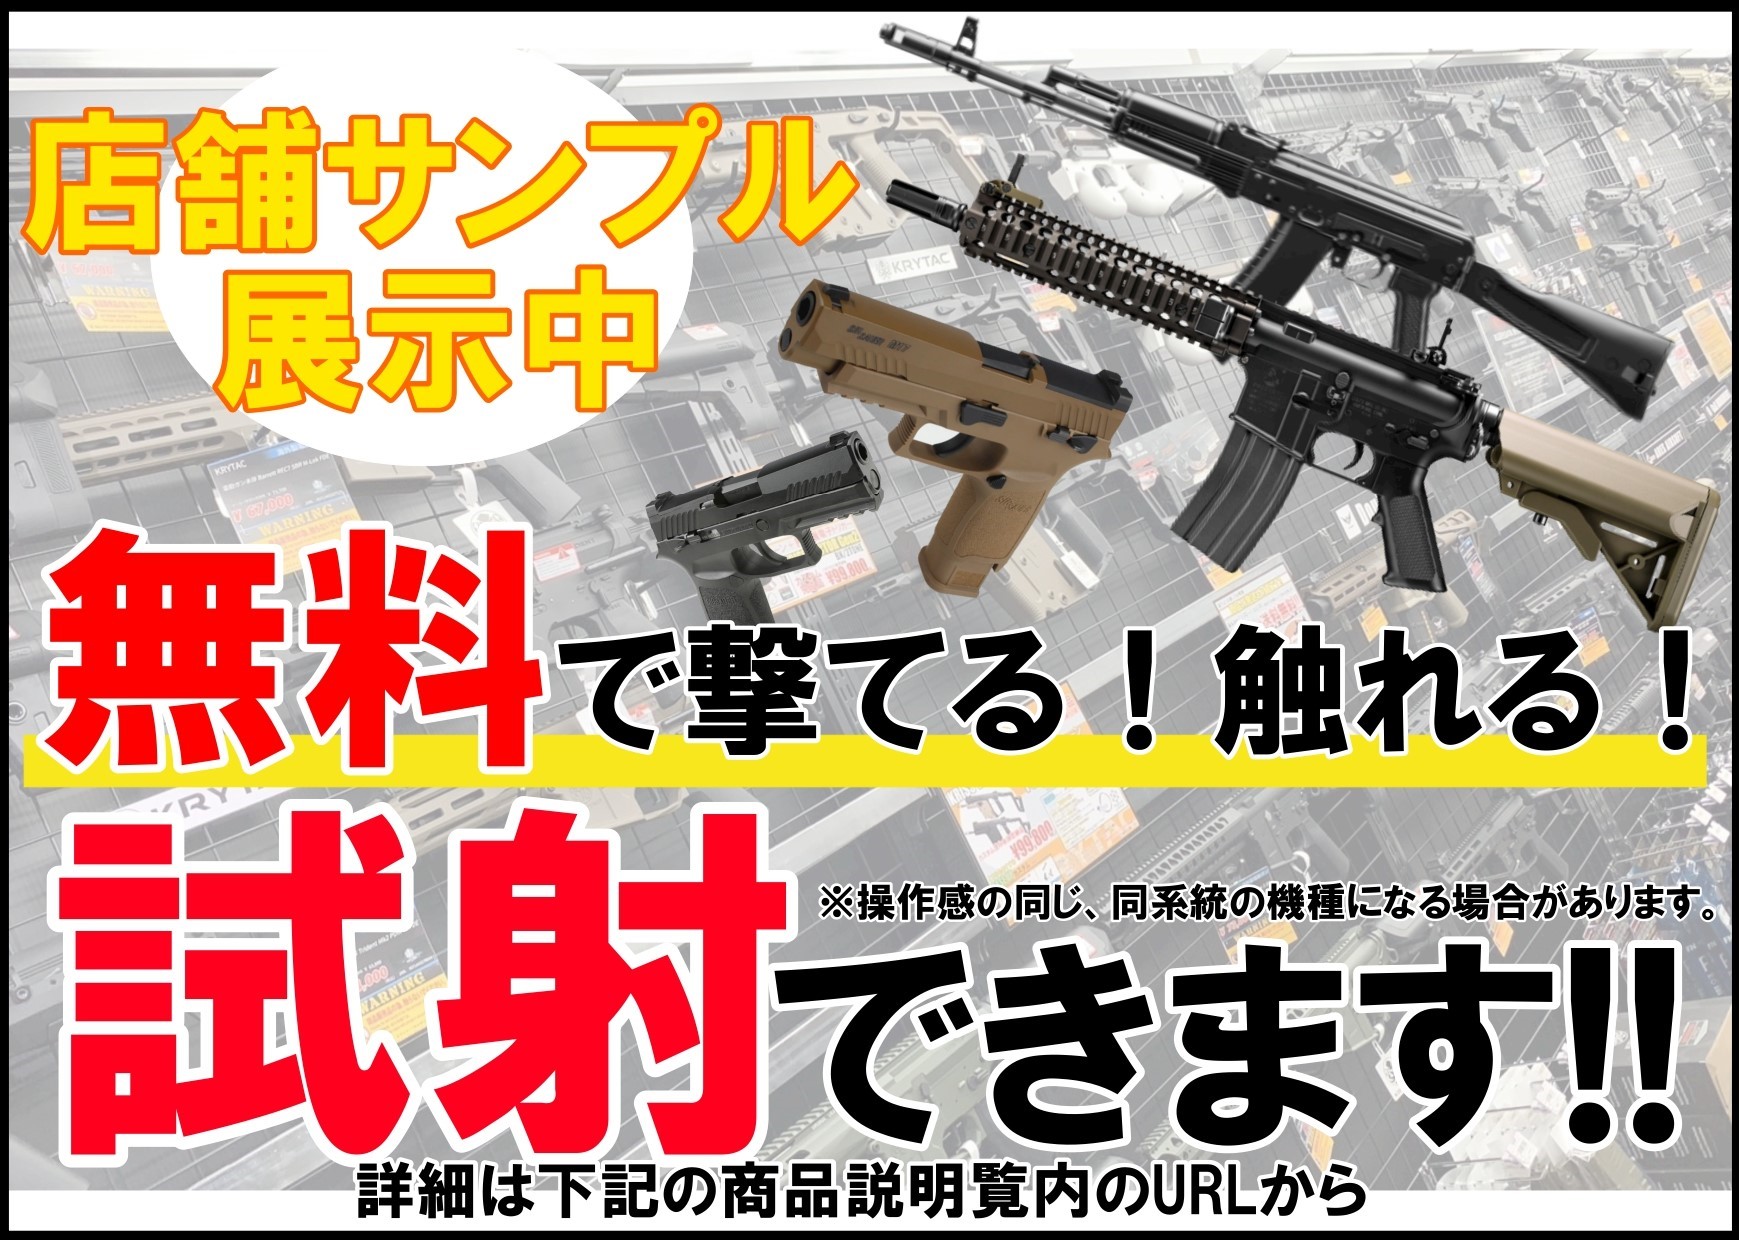 東京マルイ製 HK416DデルタカスタムBK、ロアレシーバレーザ刻印追加-